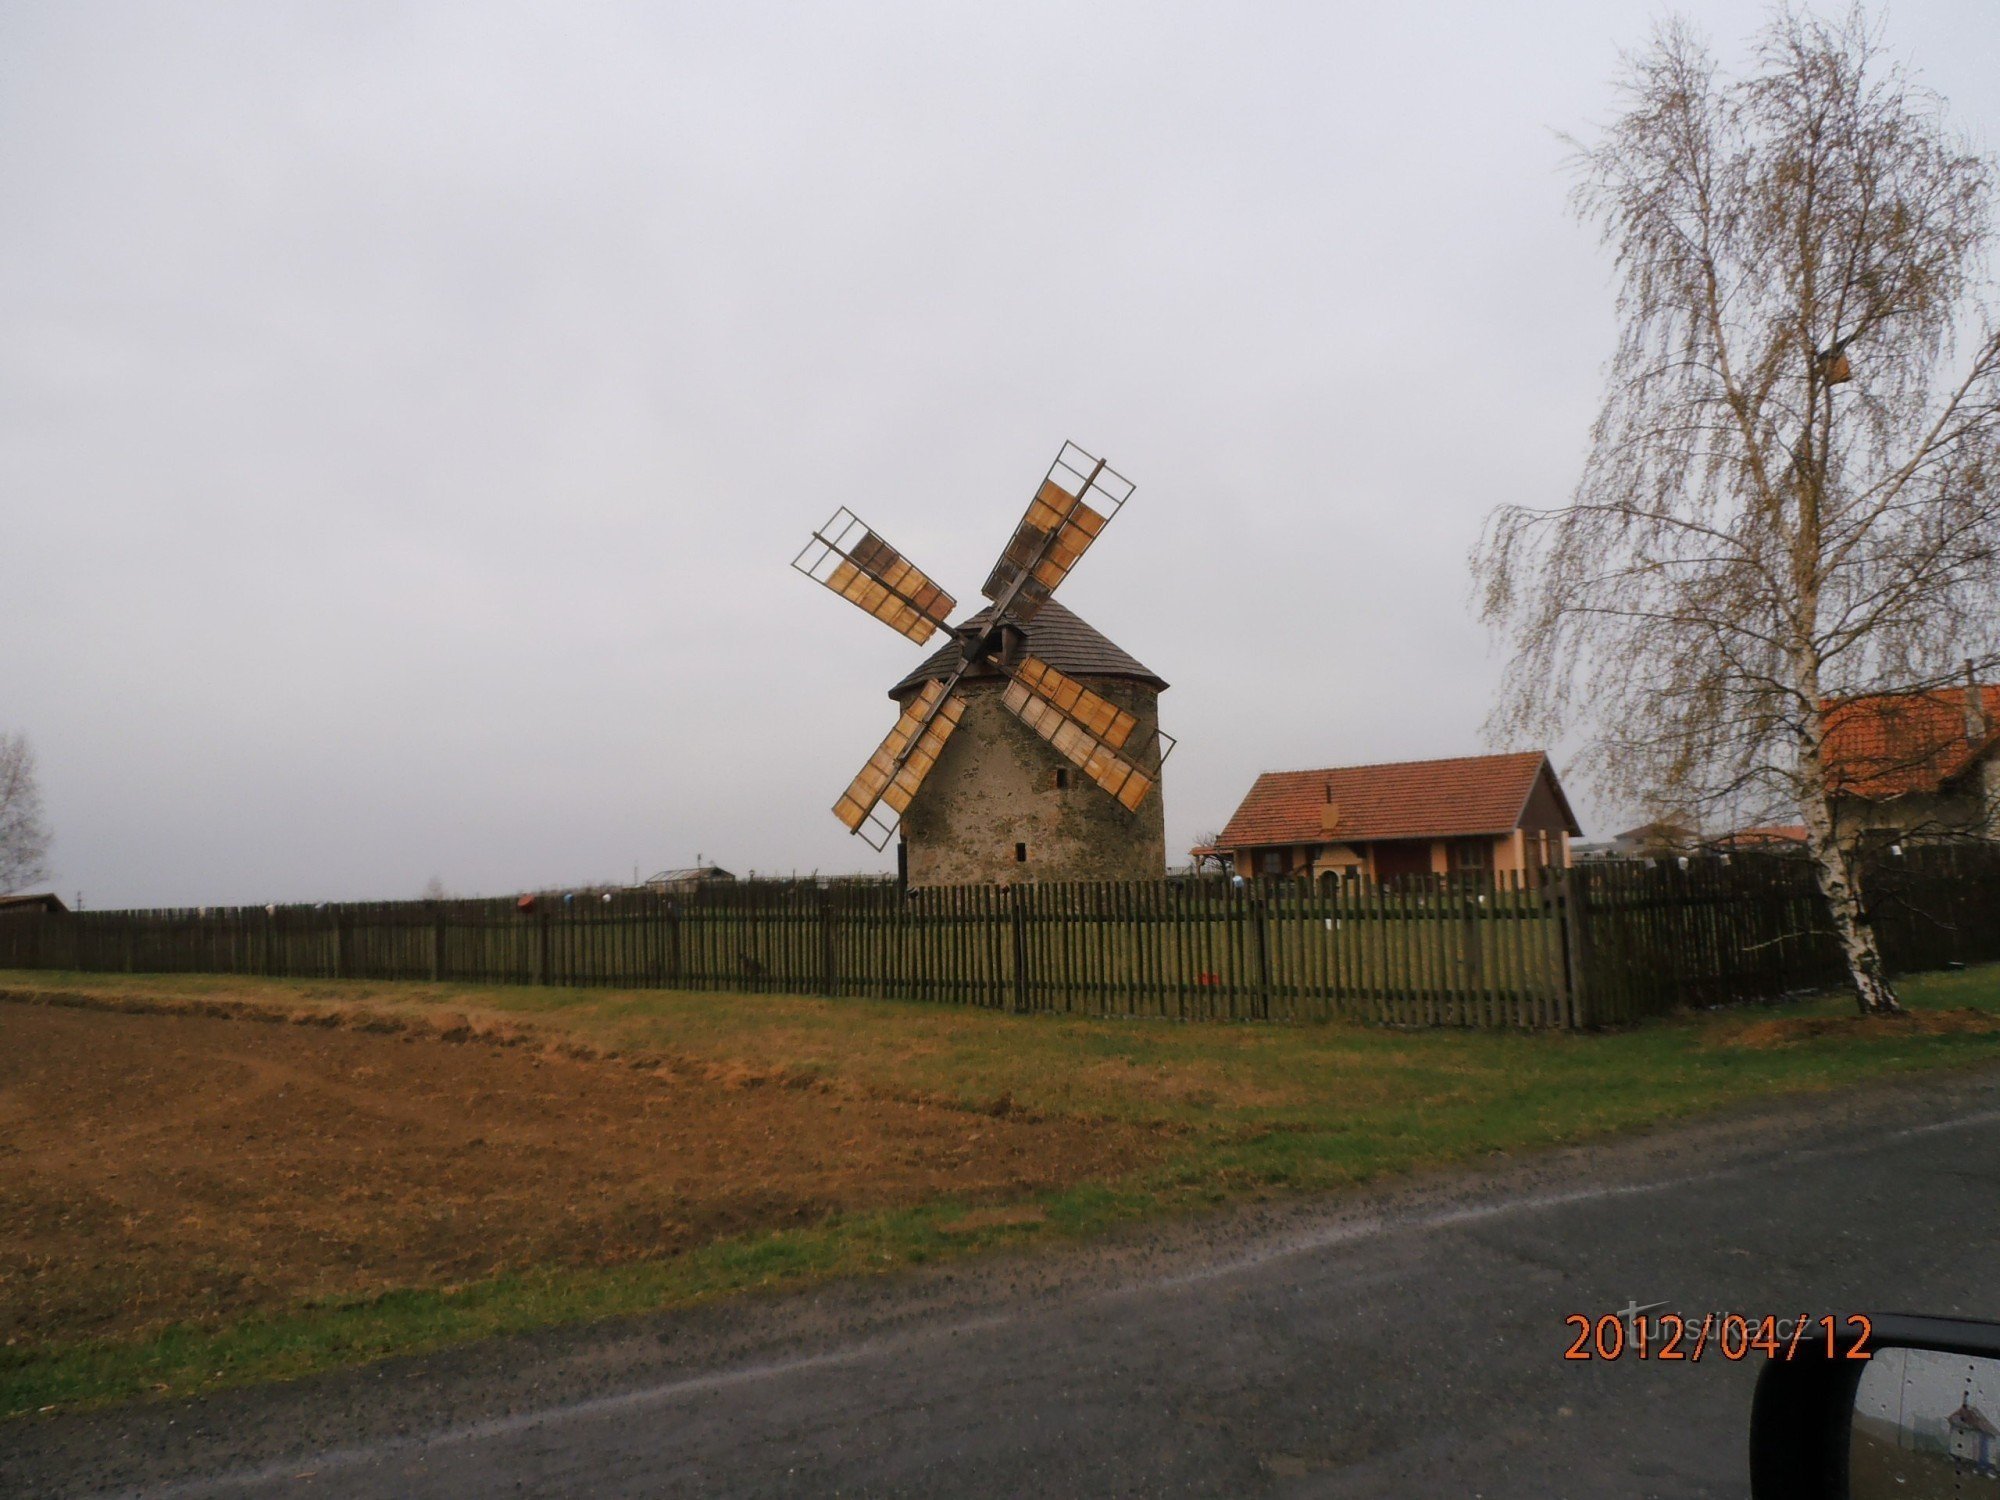 Moulin à vent dans le village de Přemyslovice